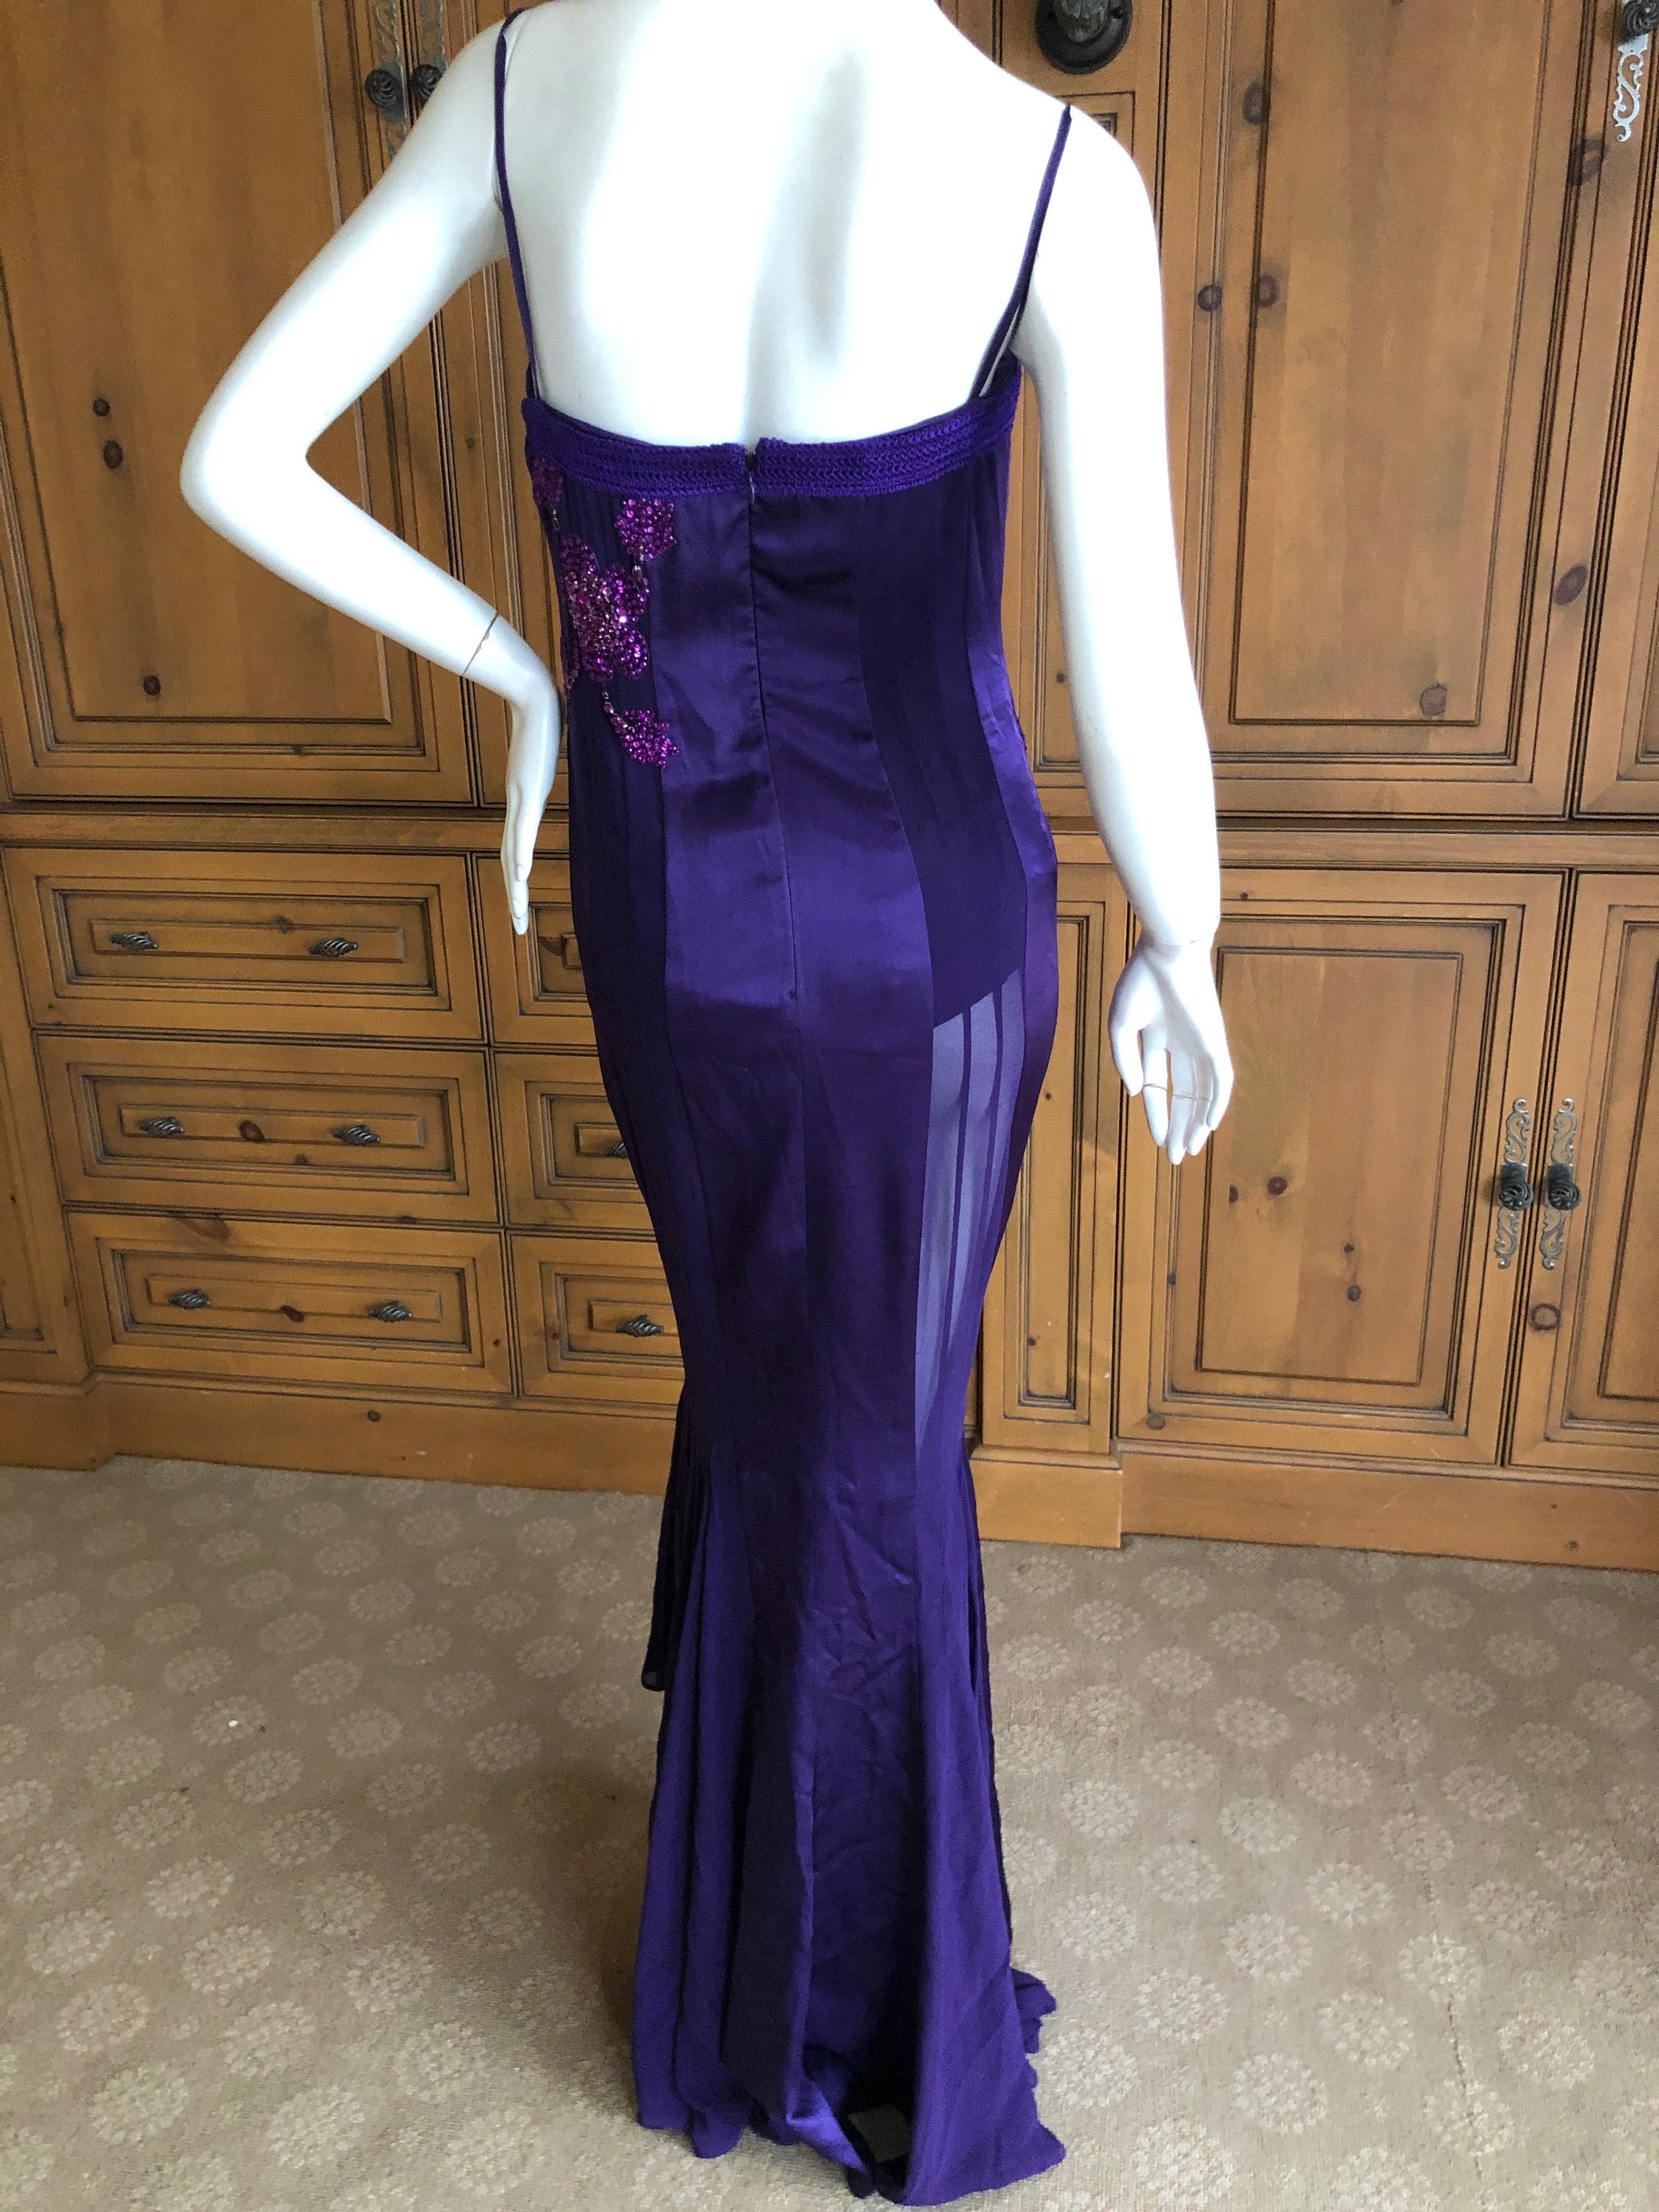 Emanuel Ungaro Amethyst Embellished Vintage Silk Evening Dress by Peter Dundas For Sale 4